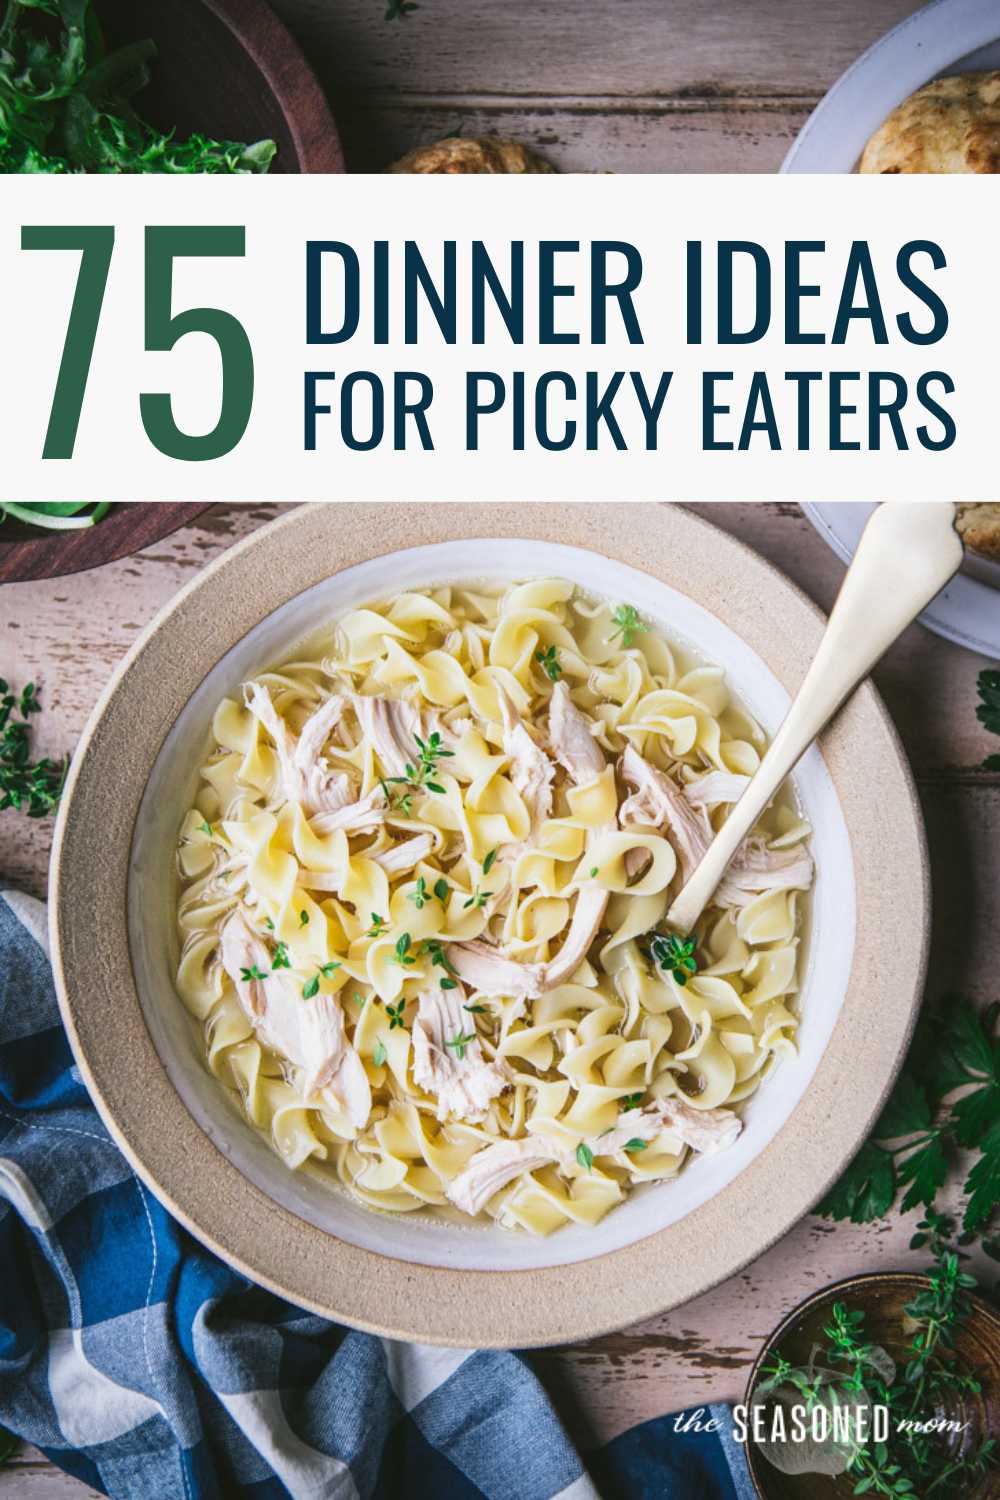 https://www.theseasonedmom.com/wp-content/uploads/2023/03/Dinner-Ideas-for-Picky-Eaters-Pin-1.jpg